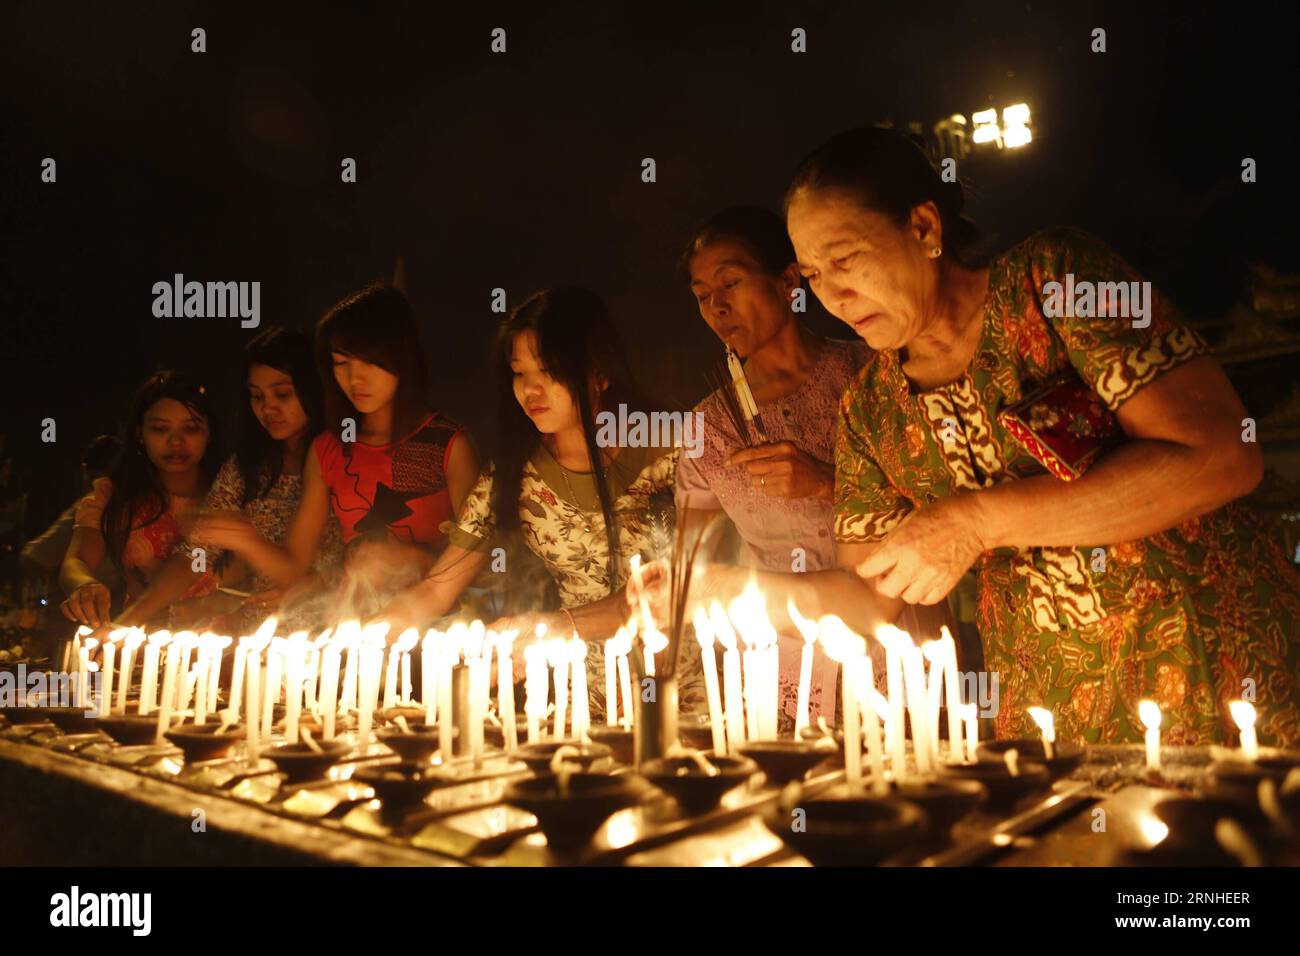 Die Menschen zünden Kerzen auf Myanmars traditionellem Tazaungdaing-Festival in der Shwedagon-Pagode in Yangon, Myanmar, 13. November 2016. Das Tazaungdaing Festival, auch bekannt als das Festival der Lichter, das im achten Monat des traditionellen myanmarischen Kalenders auf den Vollmondtag fällt, wird als Nationalfeiertag in Myanmar gefeiert und markiert das Ende der Regenzeit. ) (zw) MYANMAR-YANGON-TAZAUNGDAING FESTIVAL UxAung PUBLICATIONxNOTxINxCHN Celebrities Lichte Kerzen AUF Myanmar S Traditional Tazaungdaing Festival in der Shwedagon Pagoda in Yangon Myanmar 13. November 2016 das Tazaungdaing Festival T Stockfoto